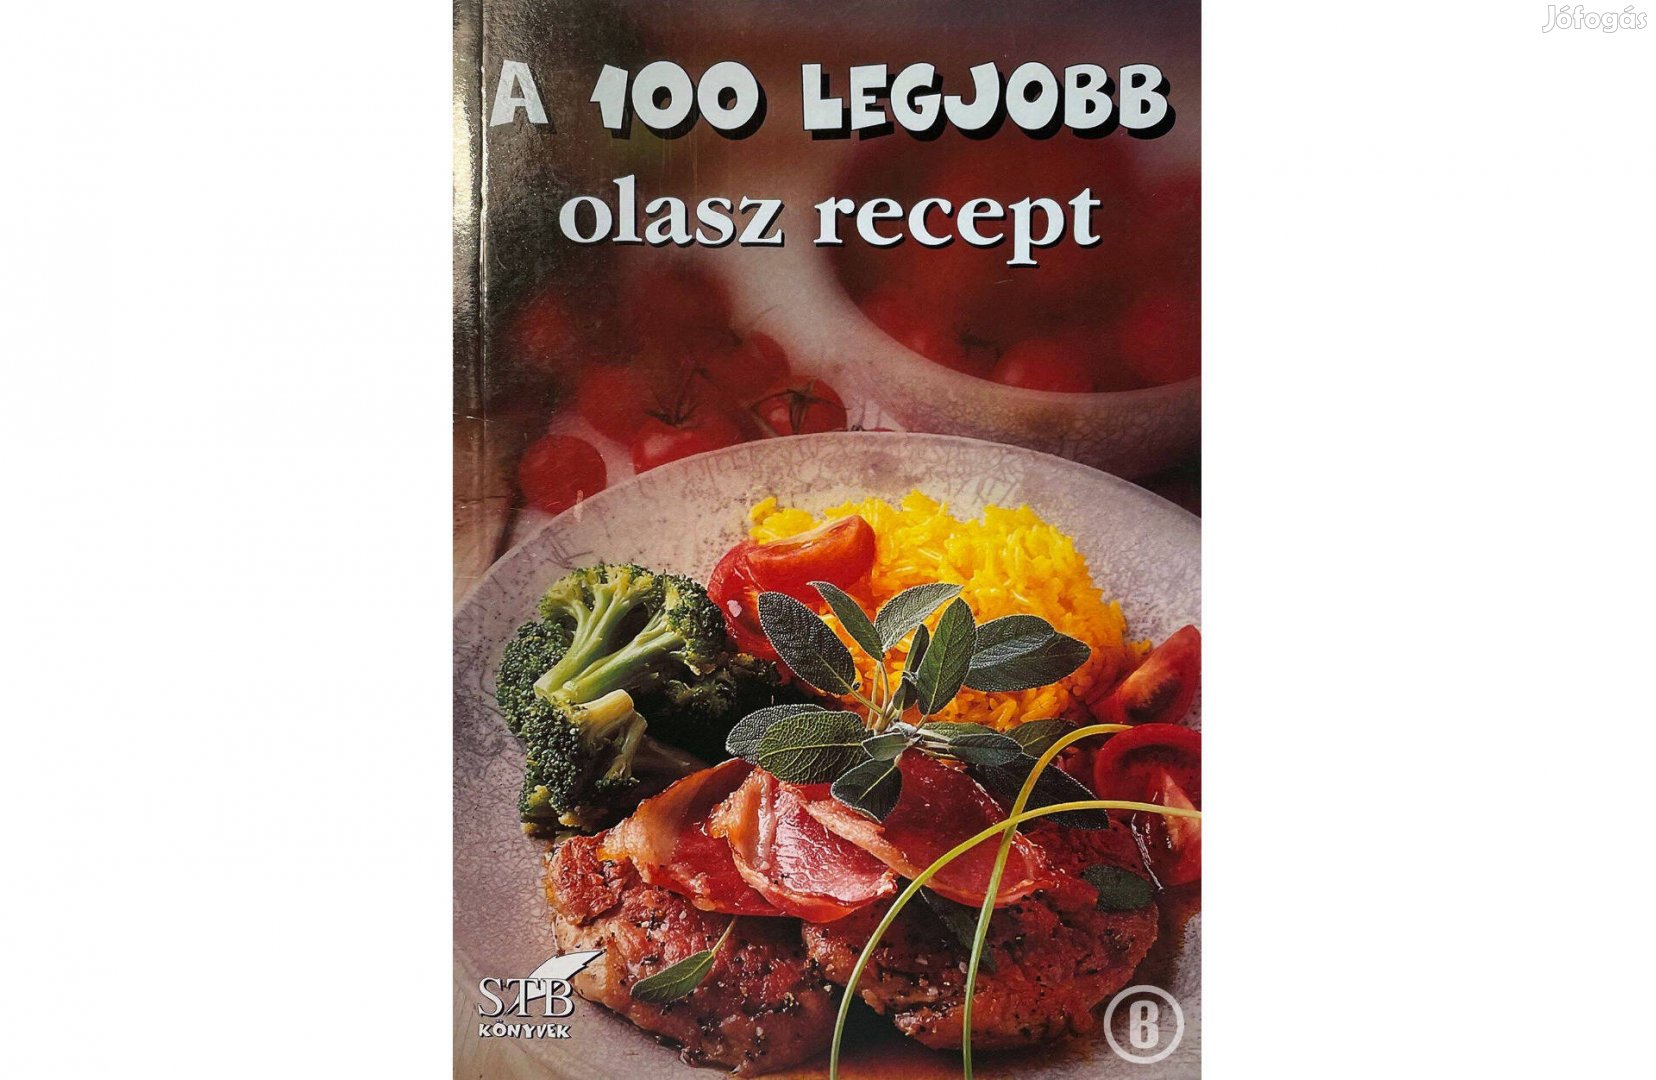 A 100 legjobb olasz recept (40. kötet / szerk. Toró Elza)